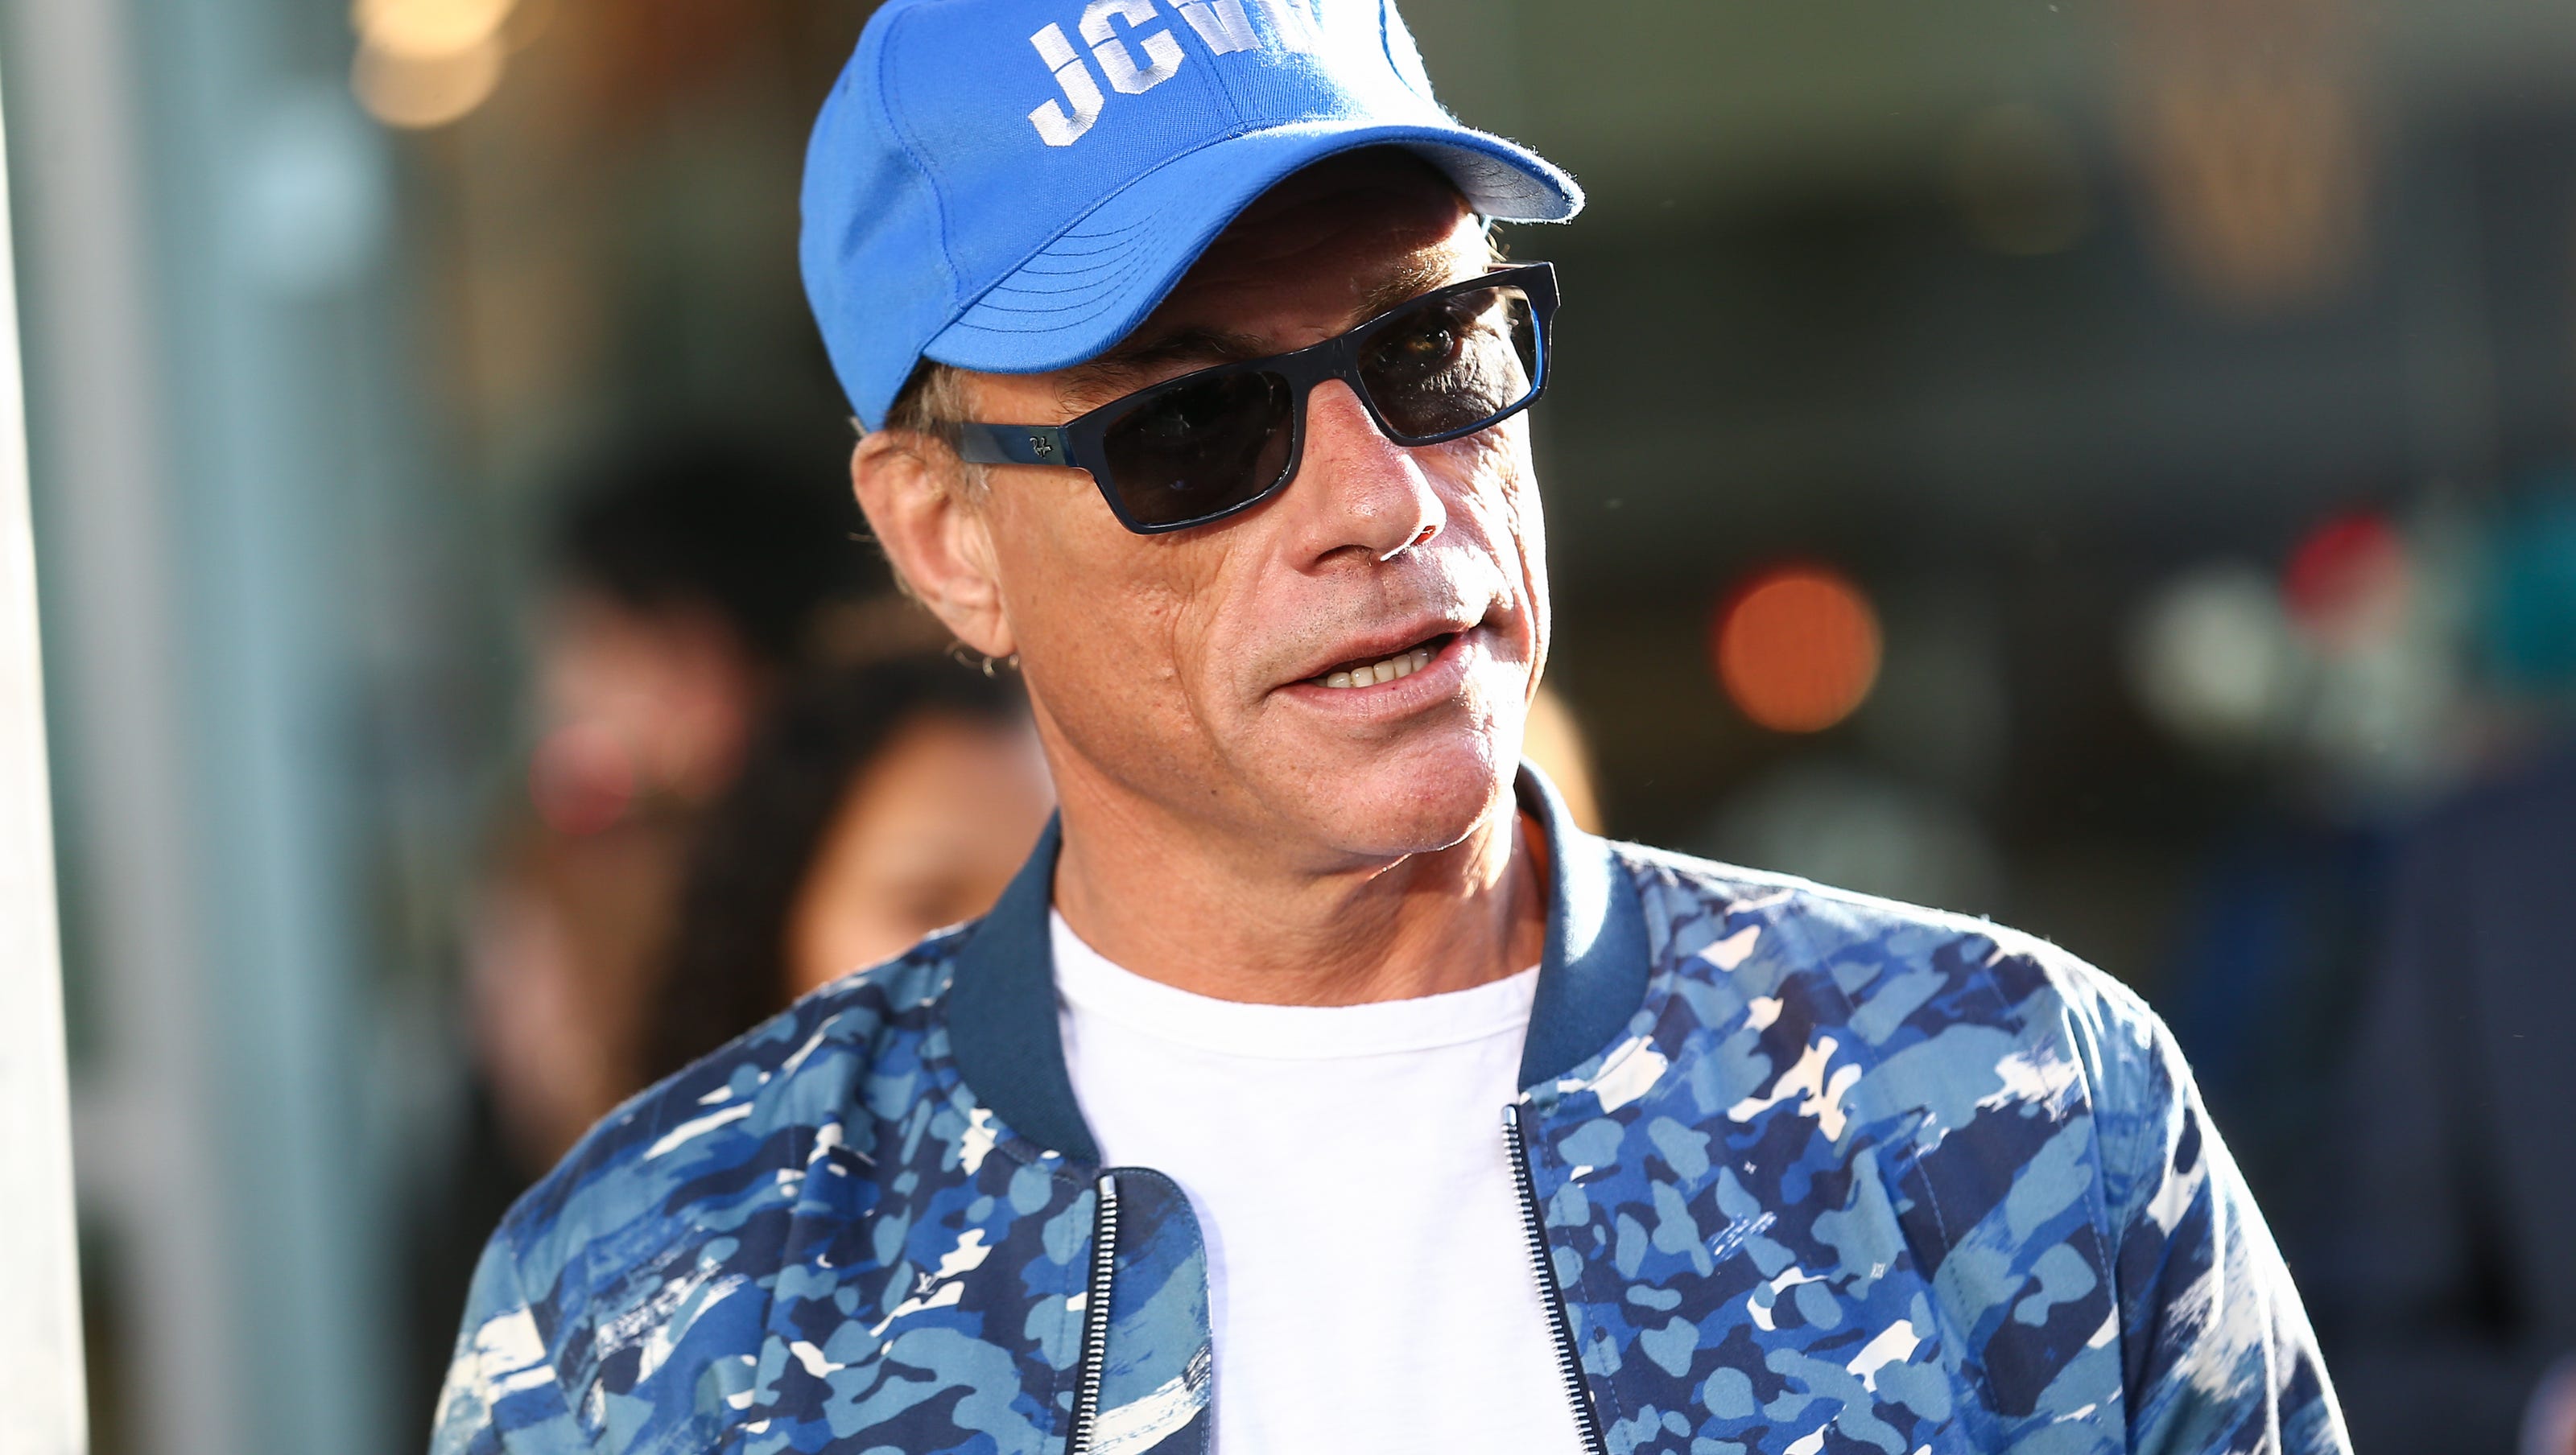 Jean Claude Van Dammes Son Is Arrested In Arizona